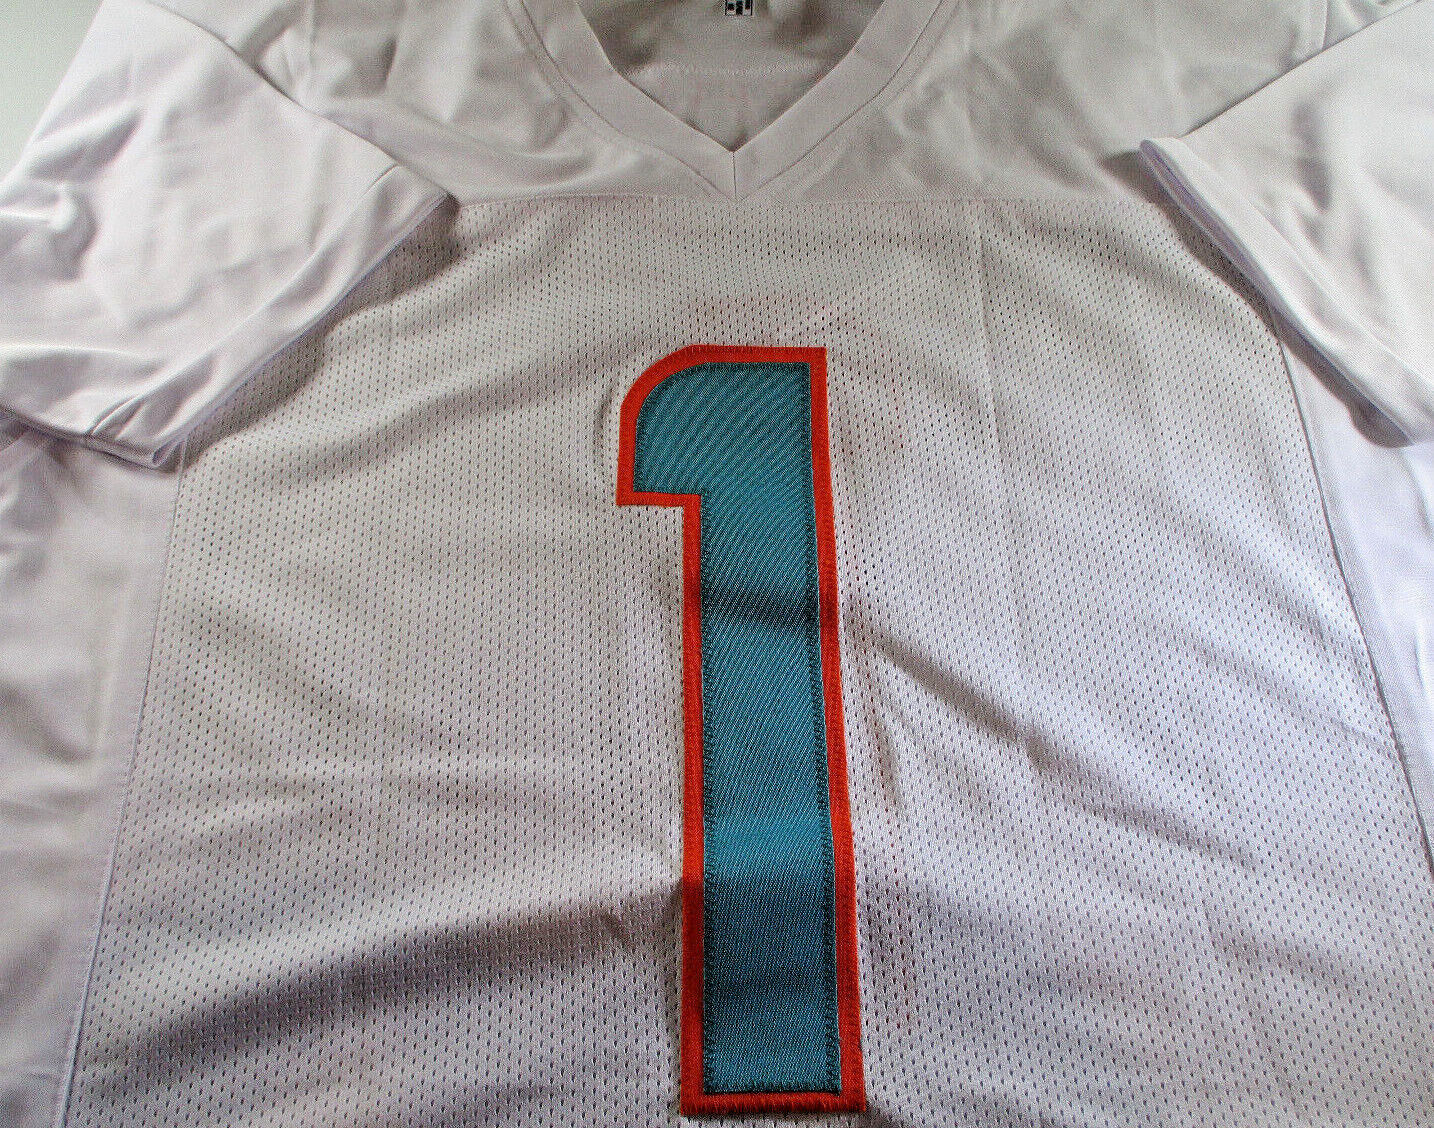 Tua Tagovailoa / Autographed Miami Dolphins White Custom Football Jersey / COA